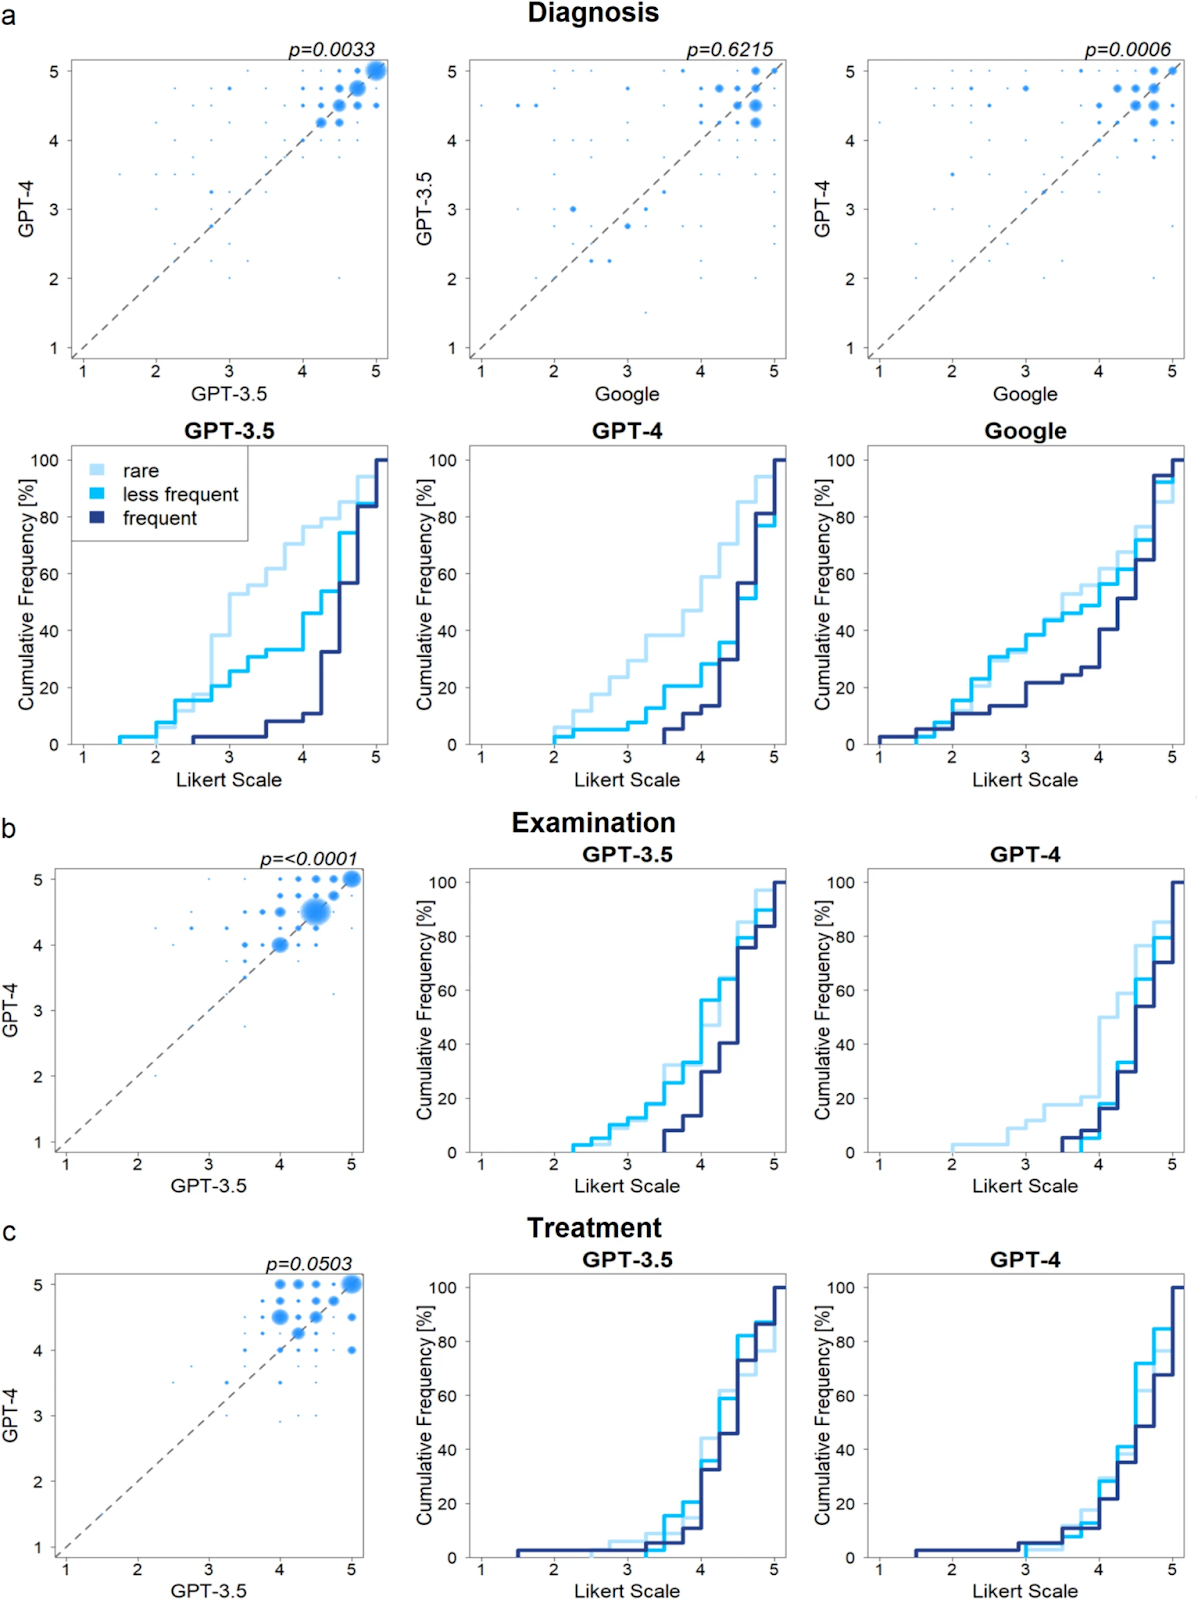 Рис. 4: a) Сравнение производительности моделей в выборе диагноза. b) Сравнение производительности моделей в приведении рекомендаций по осмотру (точное скорректированное p = 3.2241·10^-6). c) Сравнение производительности моделей в подборе лечения. Пузырьковые диаграммы показывают попарное сравнение двух подходов. Графики кумулятивной частоты показывают кумулятивное количество случаев (по оси Y) и их оценки точности (по оси X) для каждой подгруппы частоты заболеваний (светло-синий: редкие, средне-синий: менее частые, темно-синий: частые). Для статистического тестирования применялся односторонний тест Манна-Уитни (с учетом поправки Бонферрони для множественного тестирования, учитывая n = 12 тестов для диагностики, n = 7 тестов для осмотра и лечения).